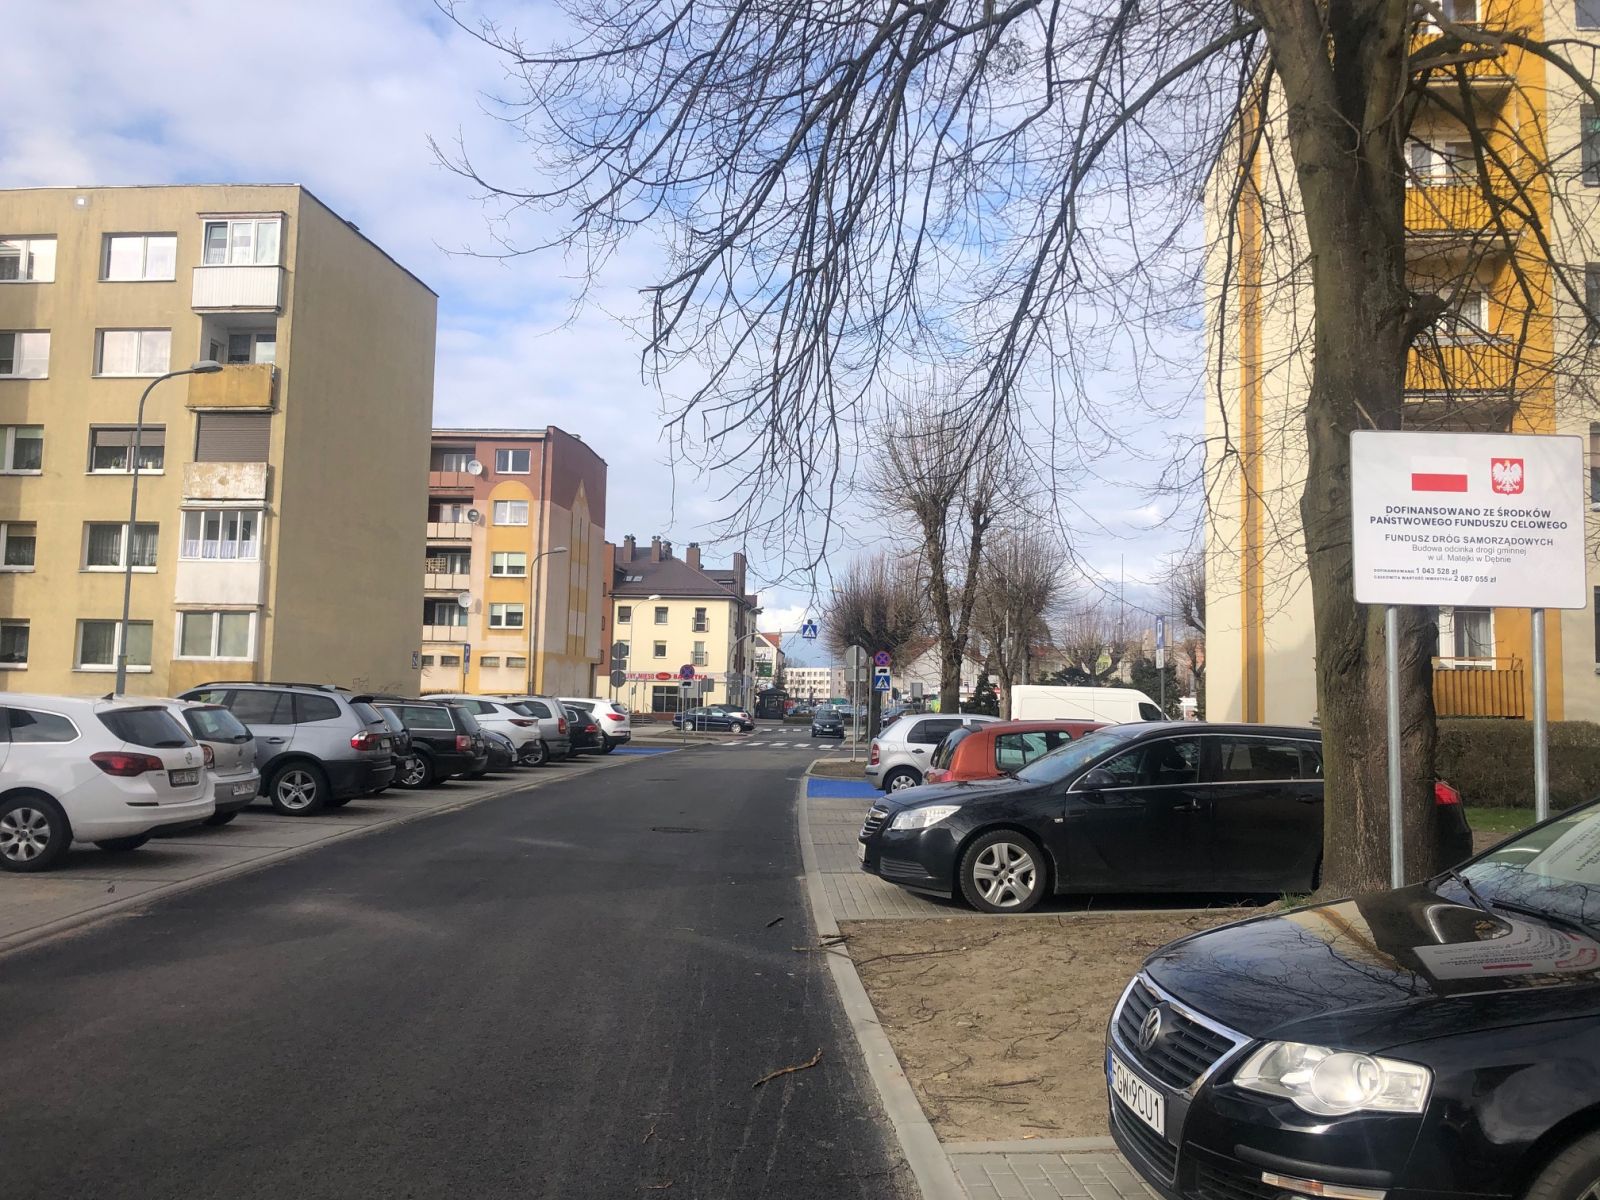 Ulica Matejki, tablica, samochody, niebo, drzewa, bloki